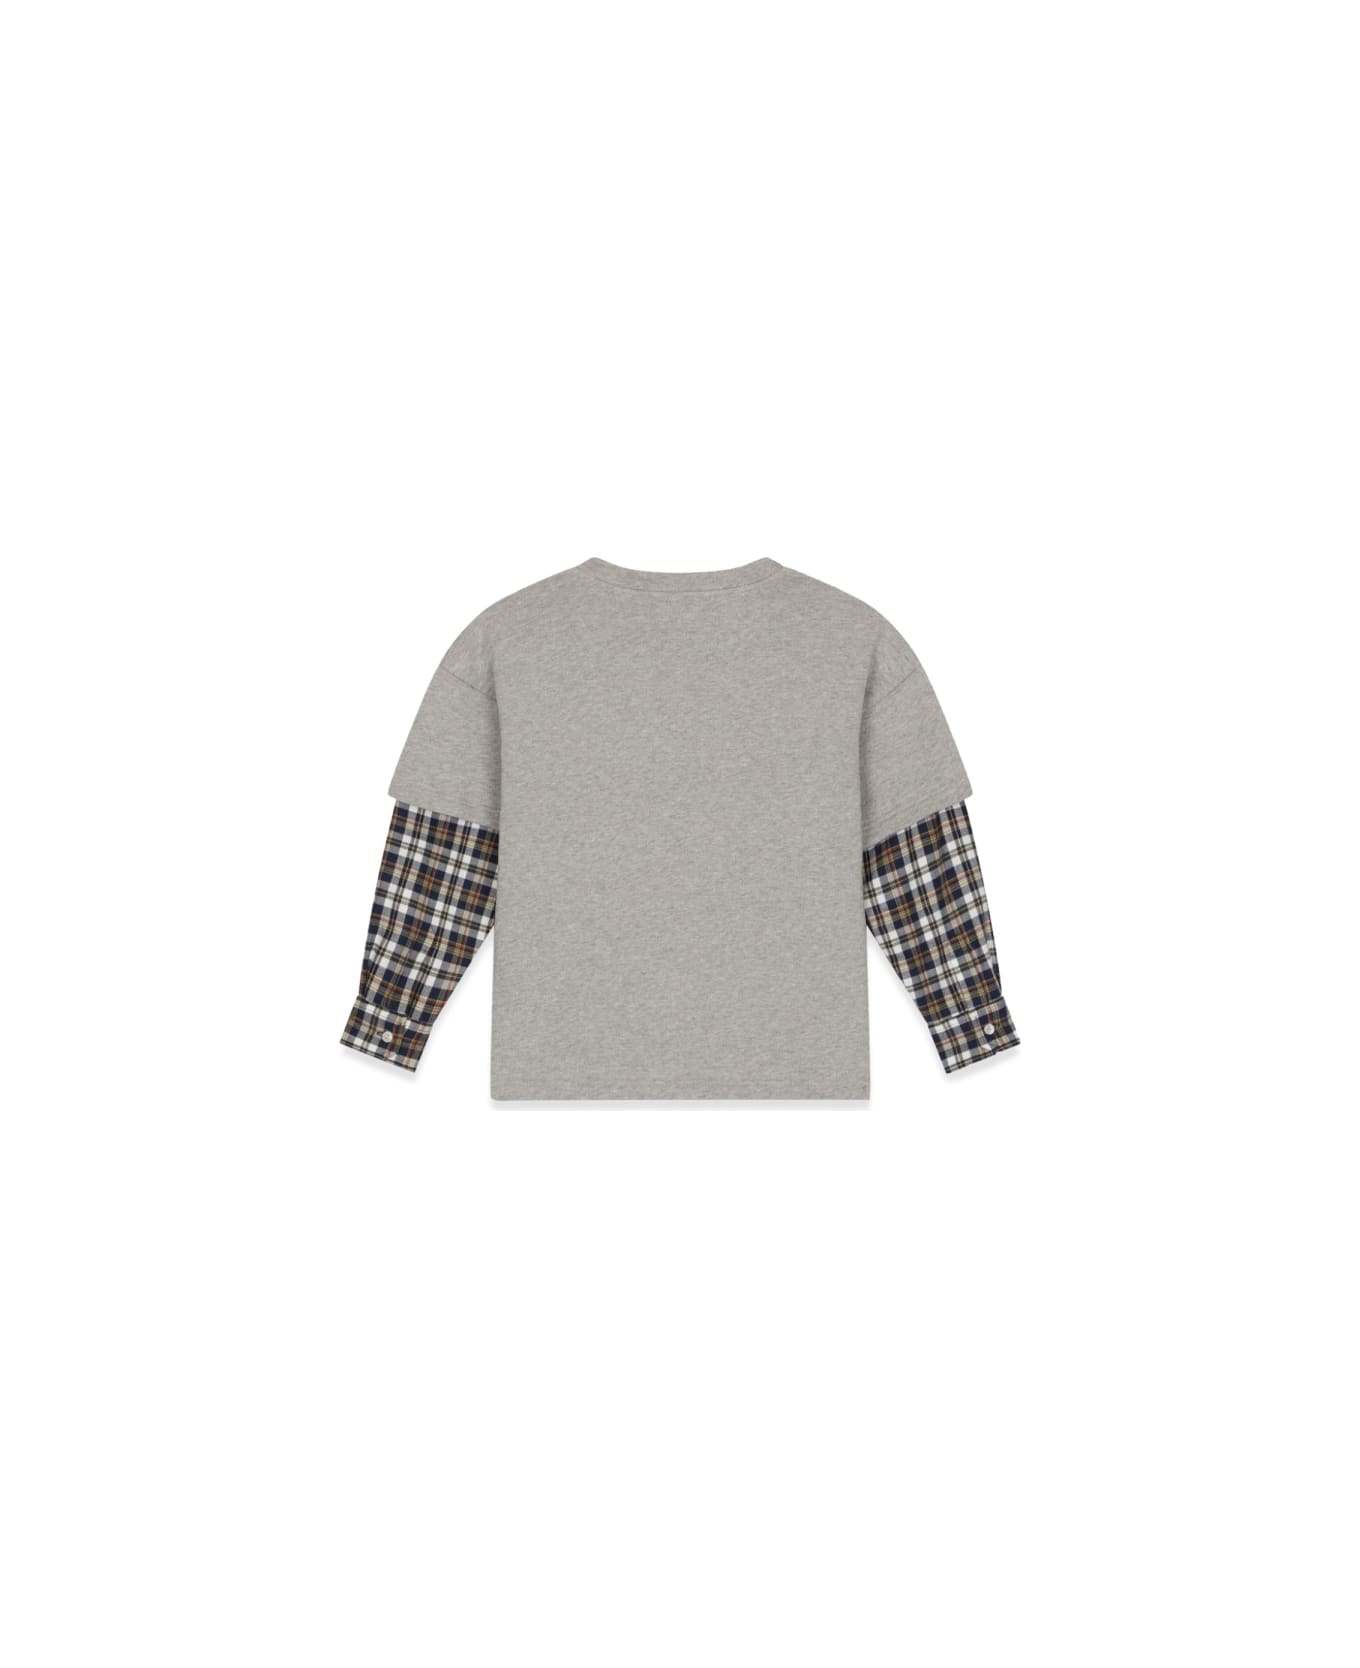 Dolce & Gabbana T-shirt Prairie Sleeves Checks - MULTICOLOUR Tシャツ＆ポロシャツ